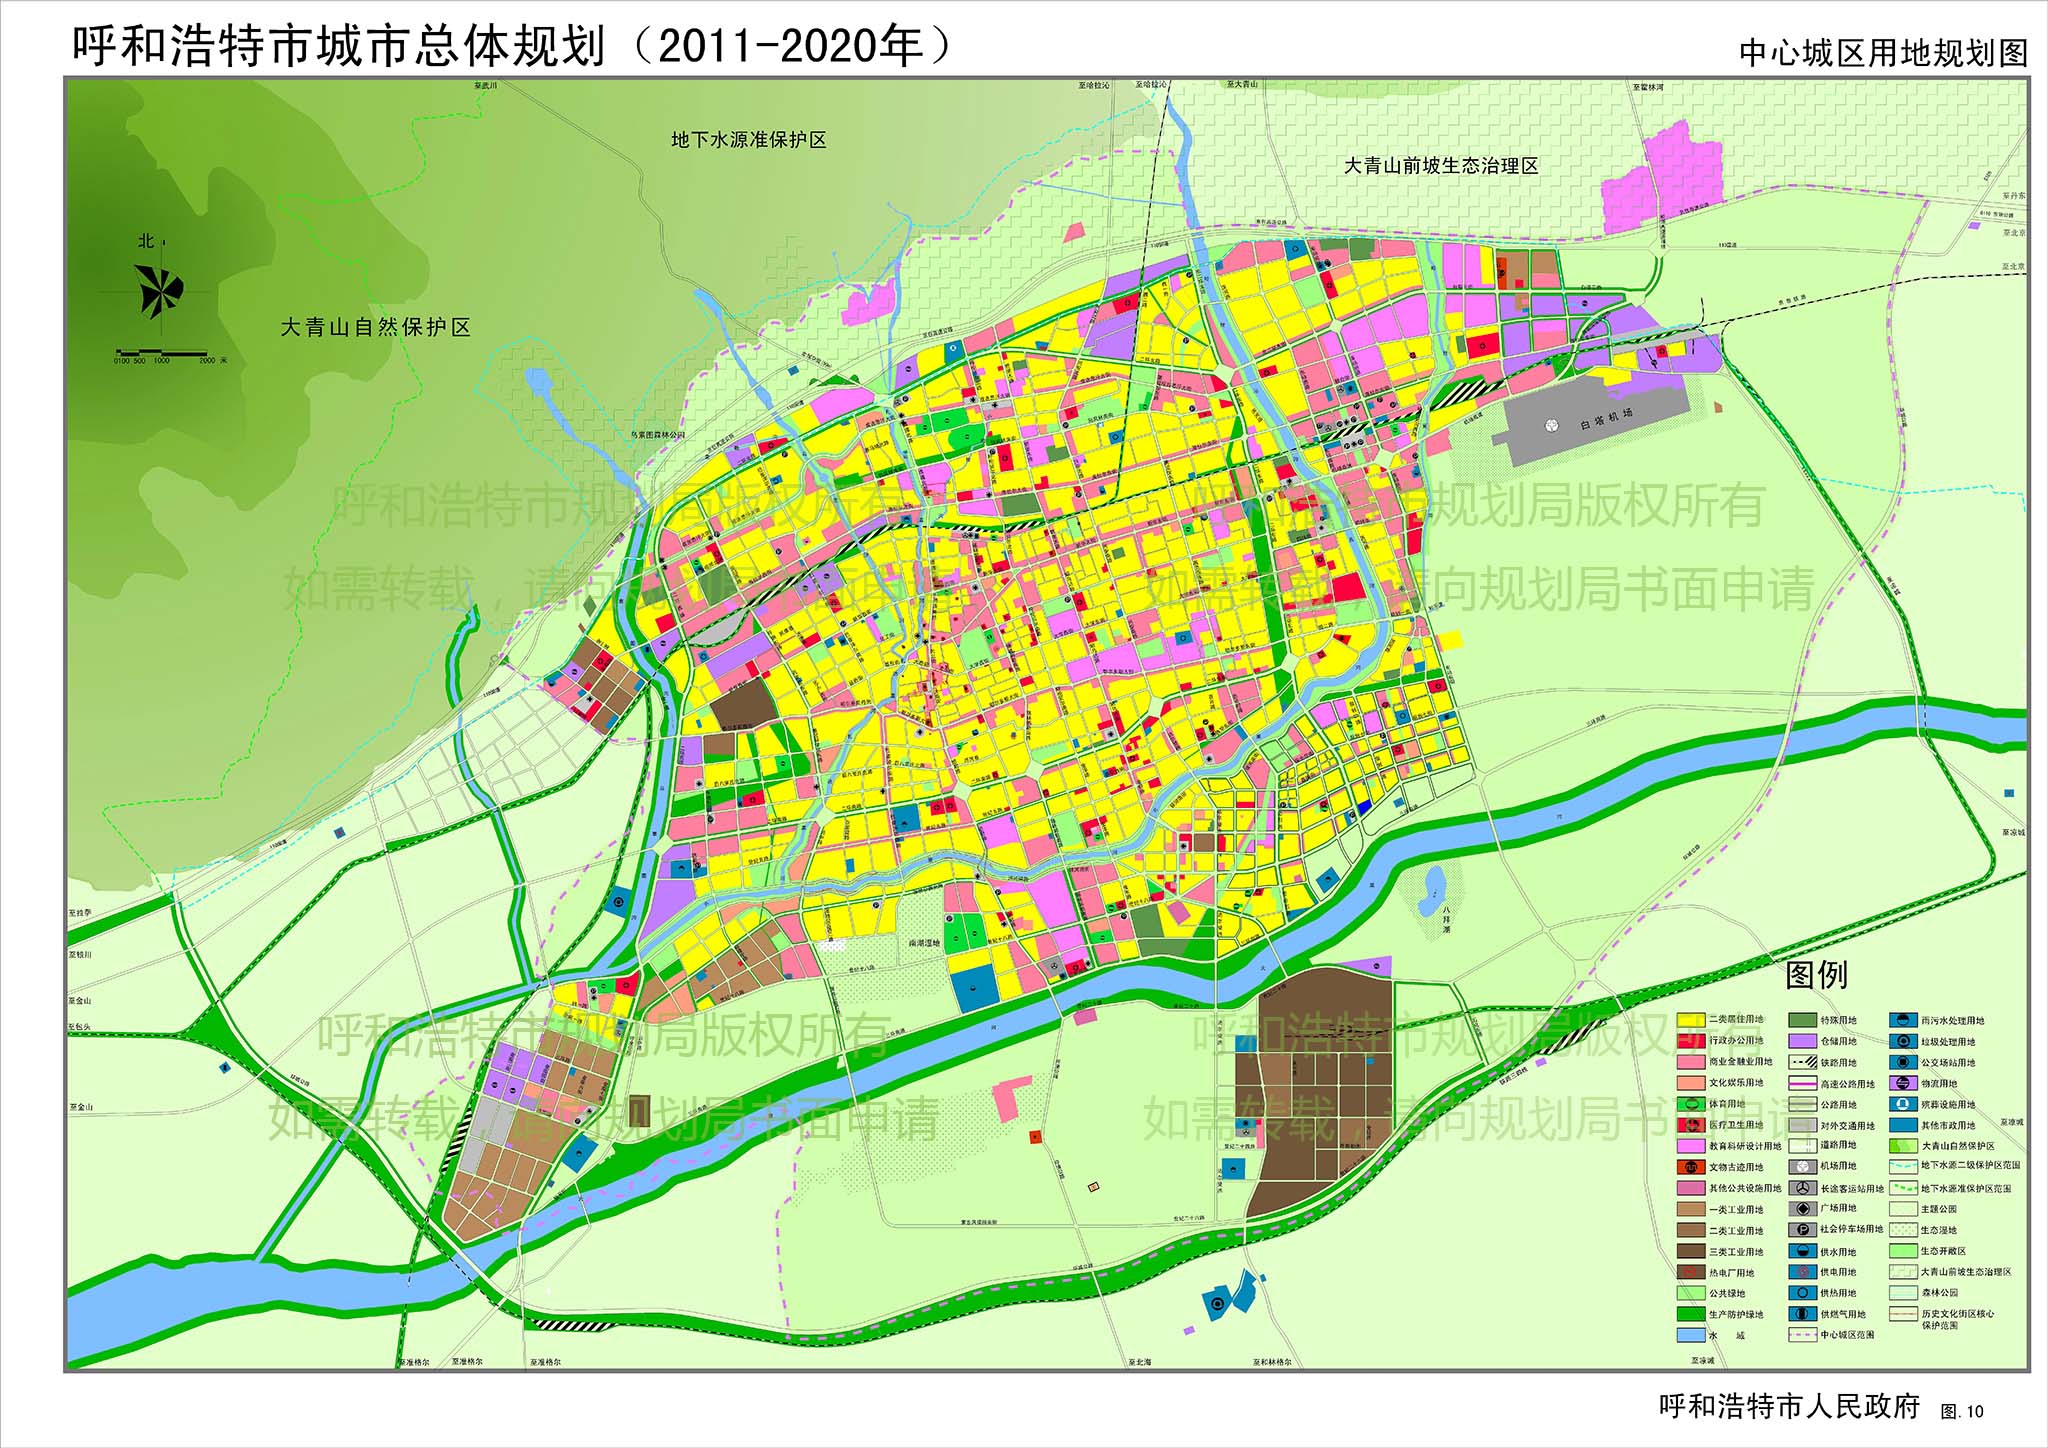 呼和浩特市总体规划(2011-2020)